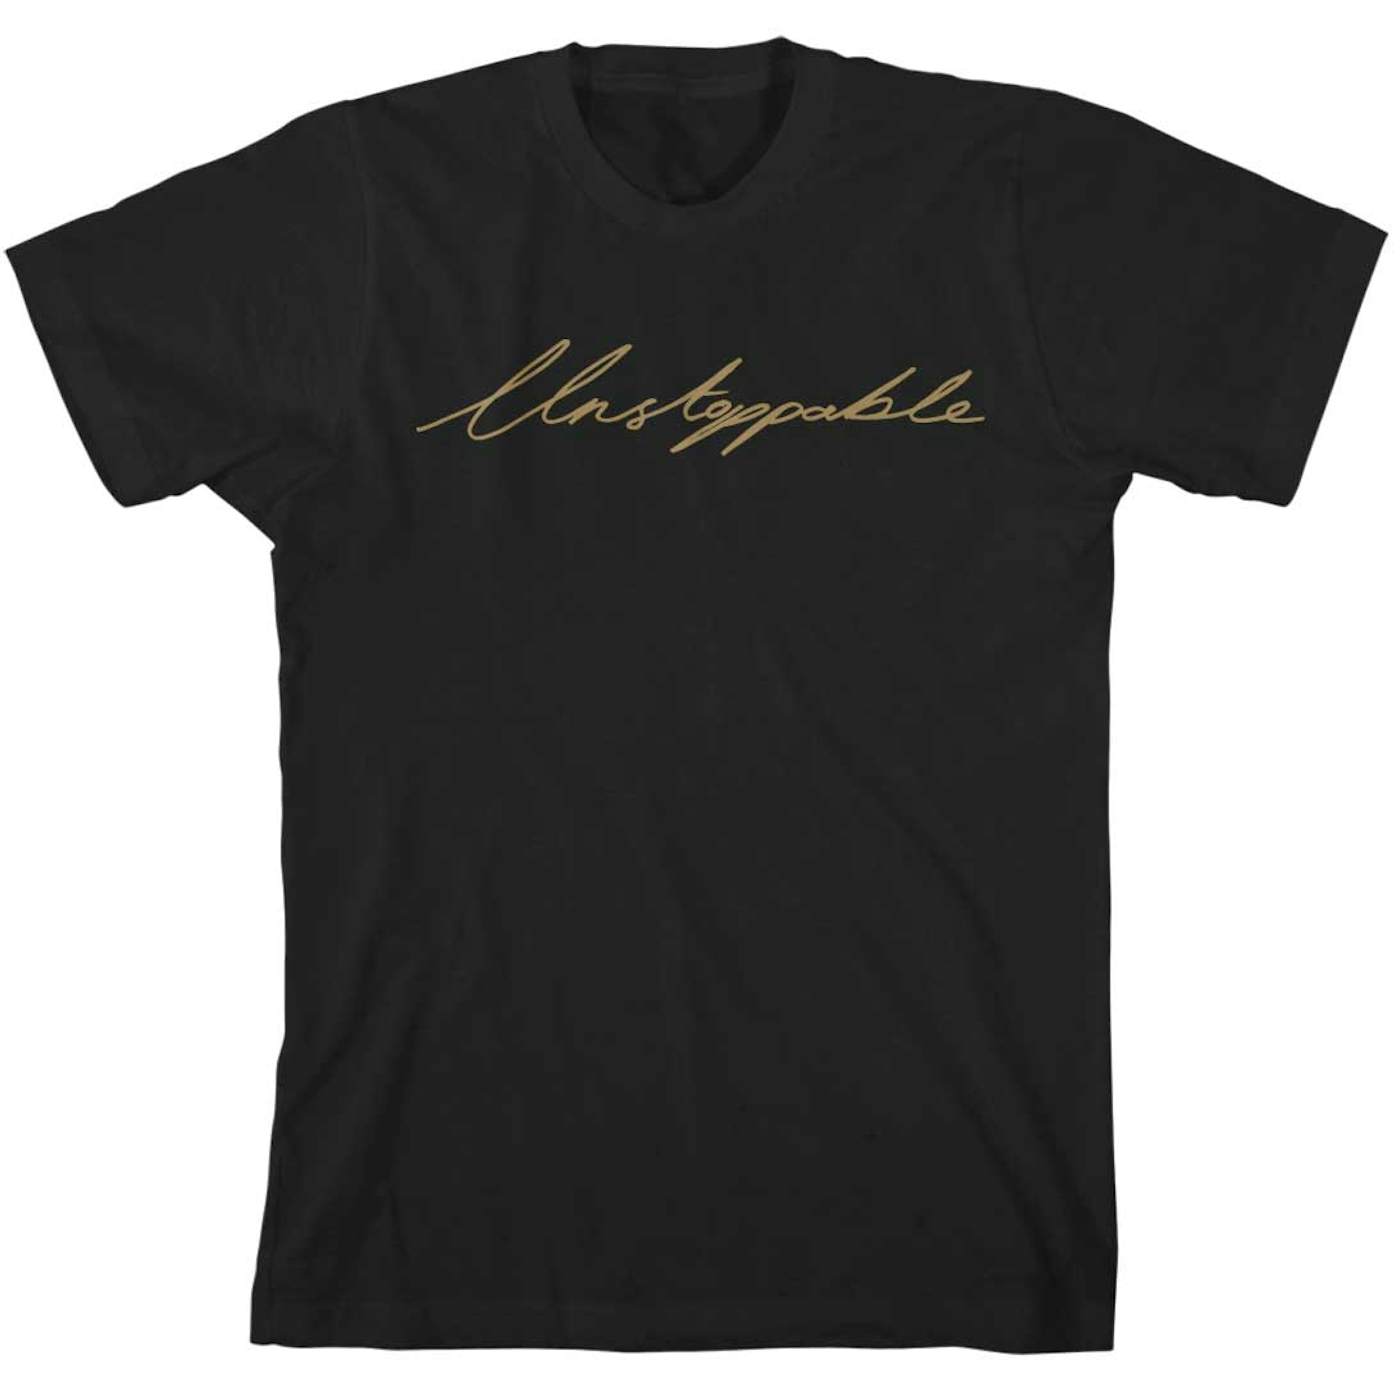 Lianne La Havas Unstoppable T-Shirt Black